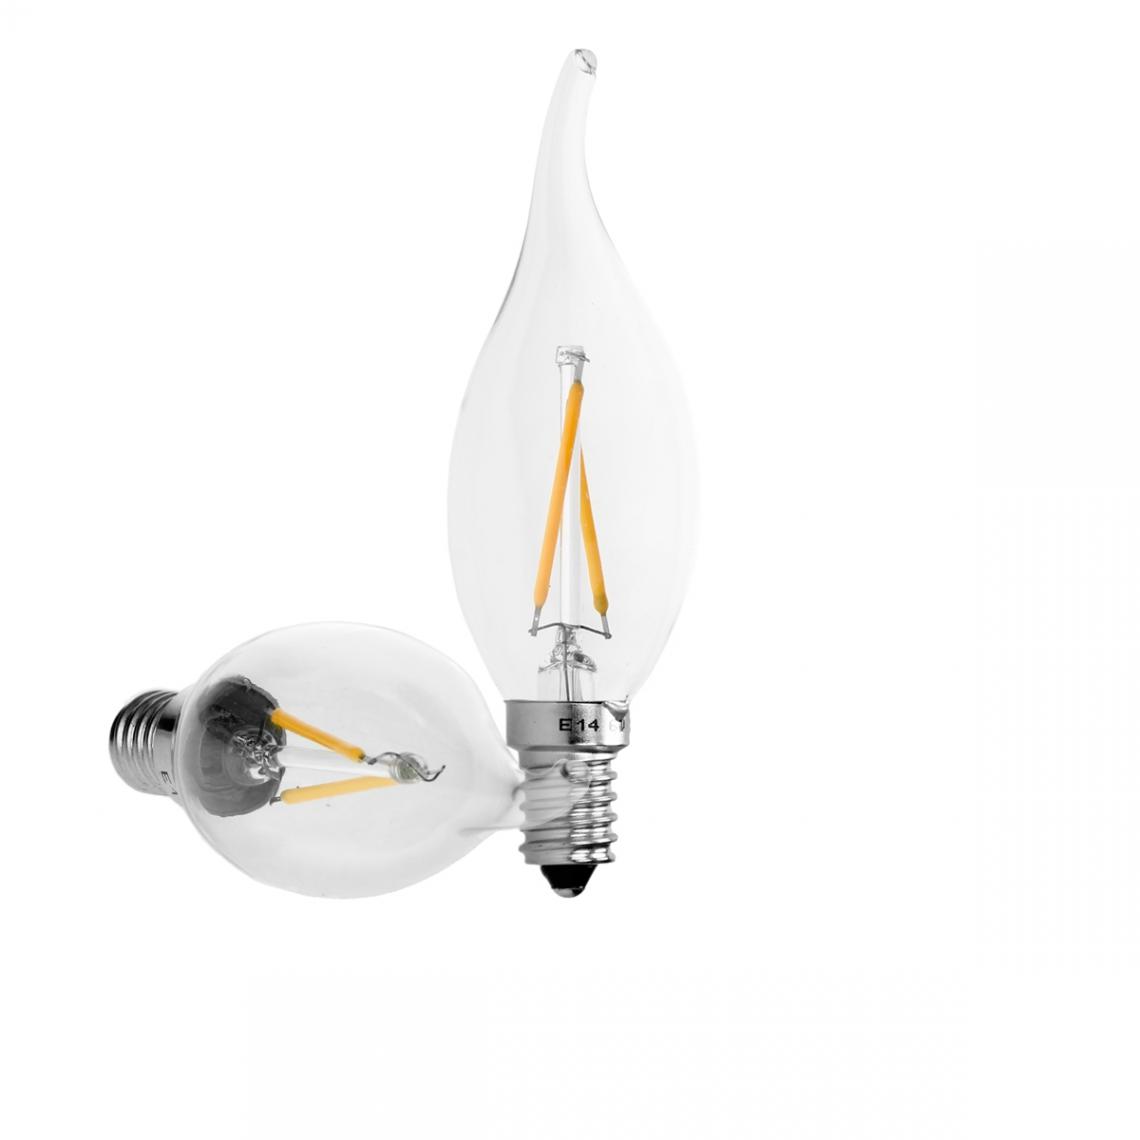 Ecd Germany - ECD Germany 5 x LED Ampoule Filament E14 2W 204 Lumens Angle de faisceau 120 ° AC 220-240V environ 15W Ampoule Lampe Blanc Chaud - Ampoules LED